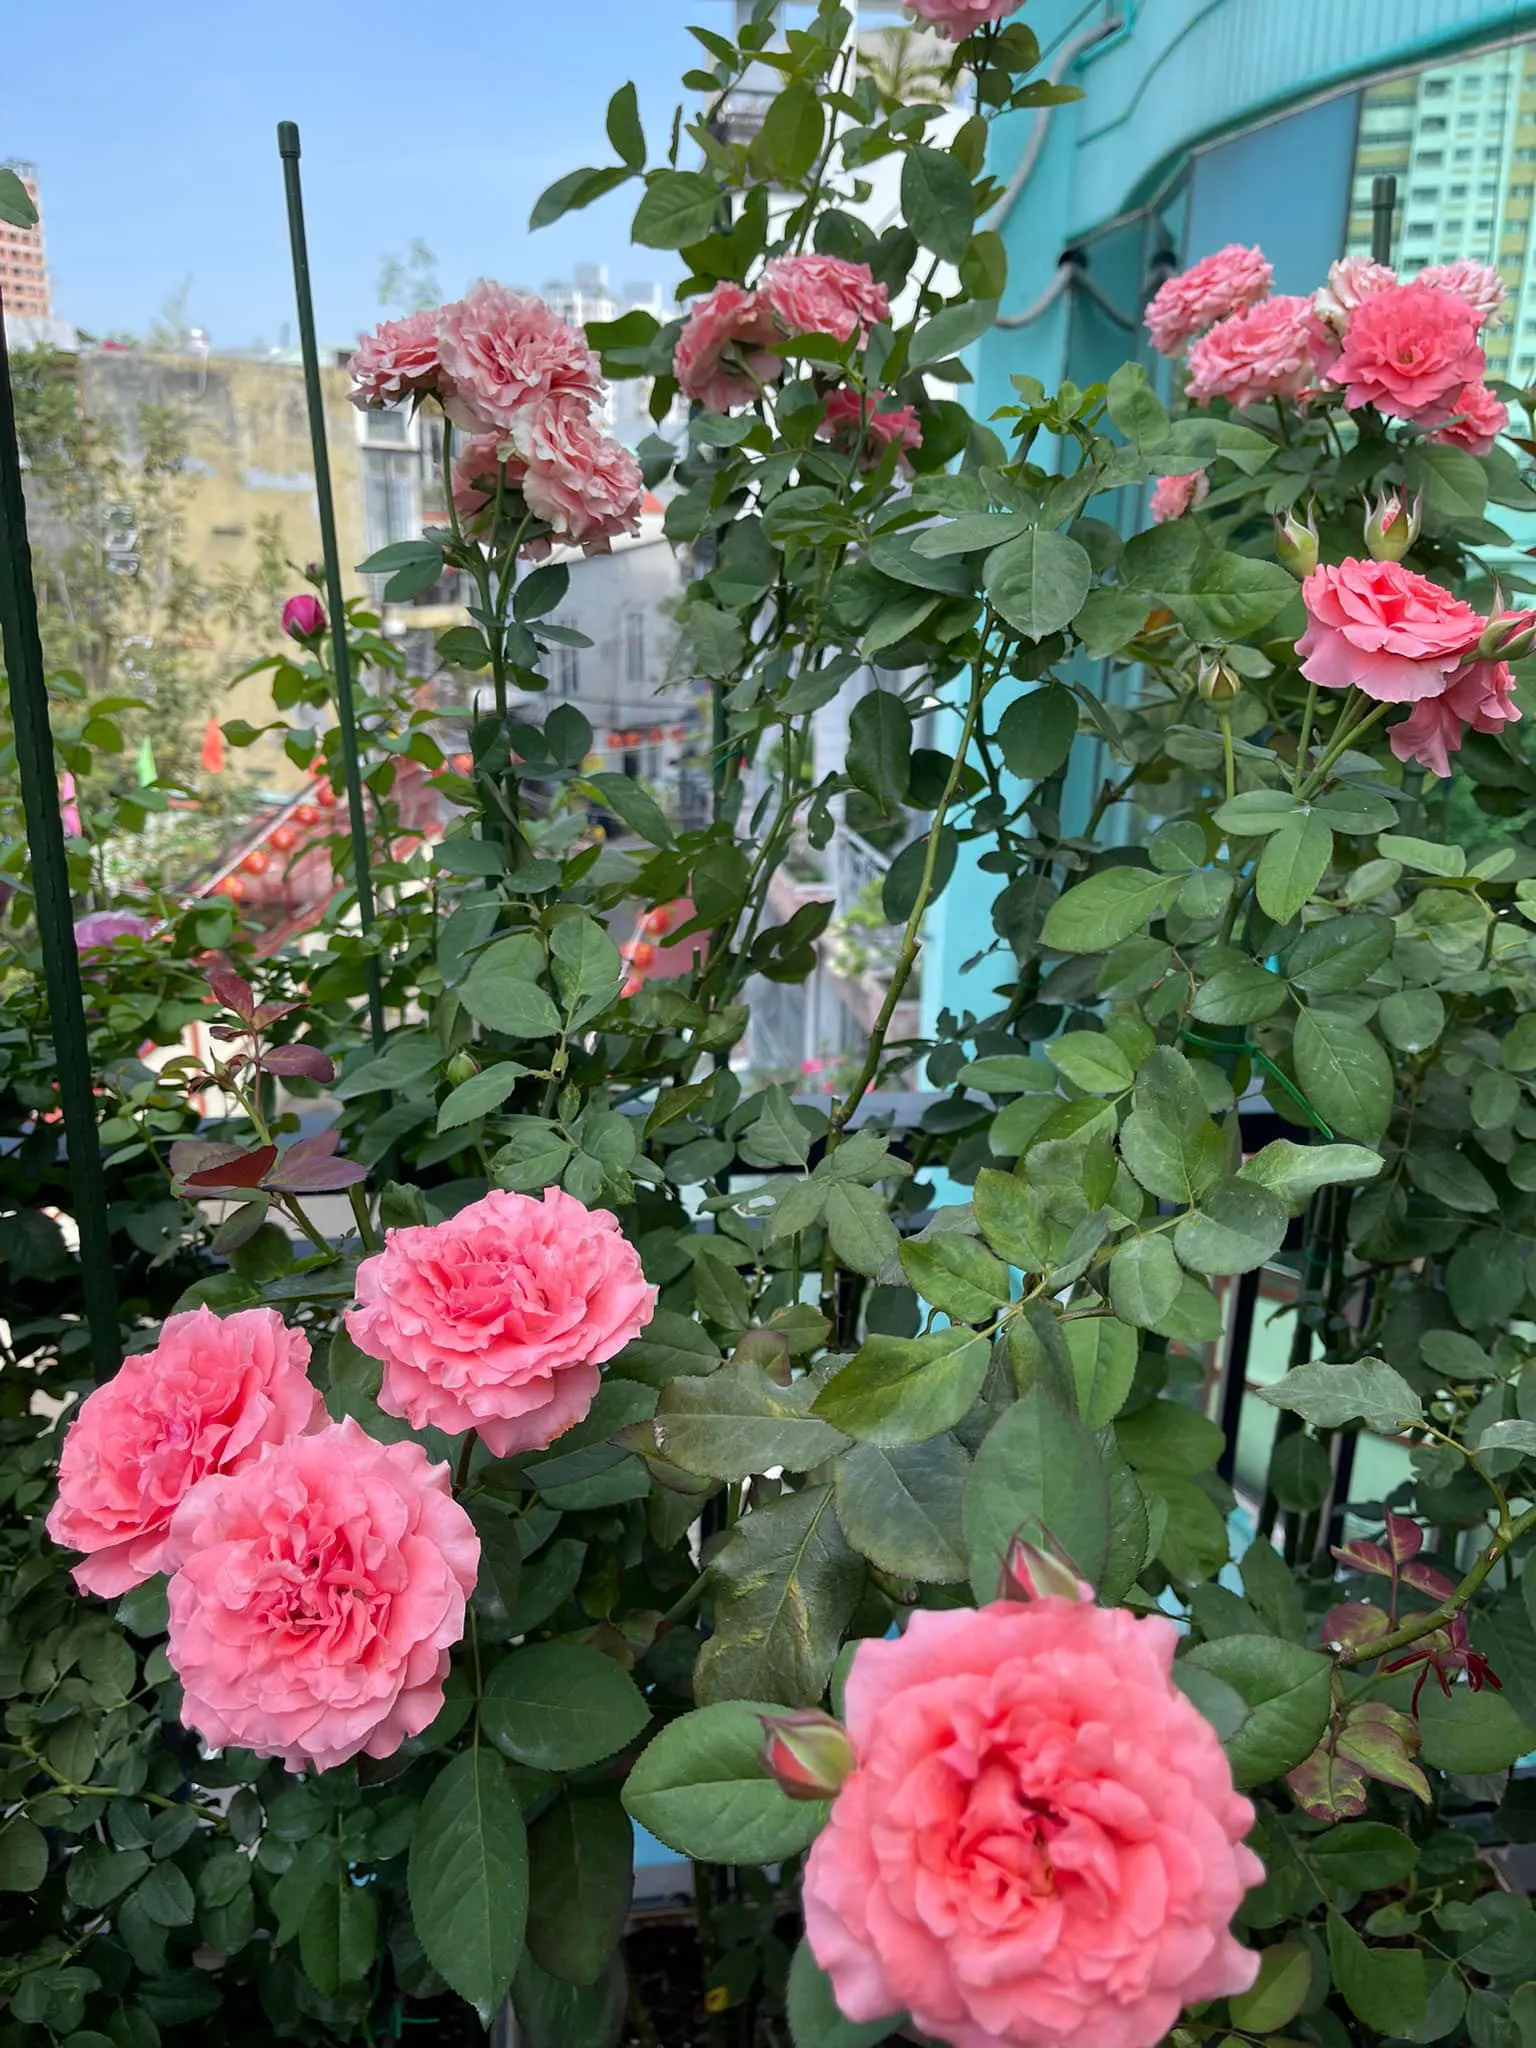 Vườn hoa hồng ngoại đẹp ngây ngất trên sân thượng giữa Sài thành của trai đẹp Sài Gòn - Ảnh 8.